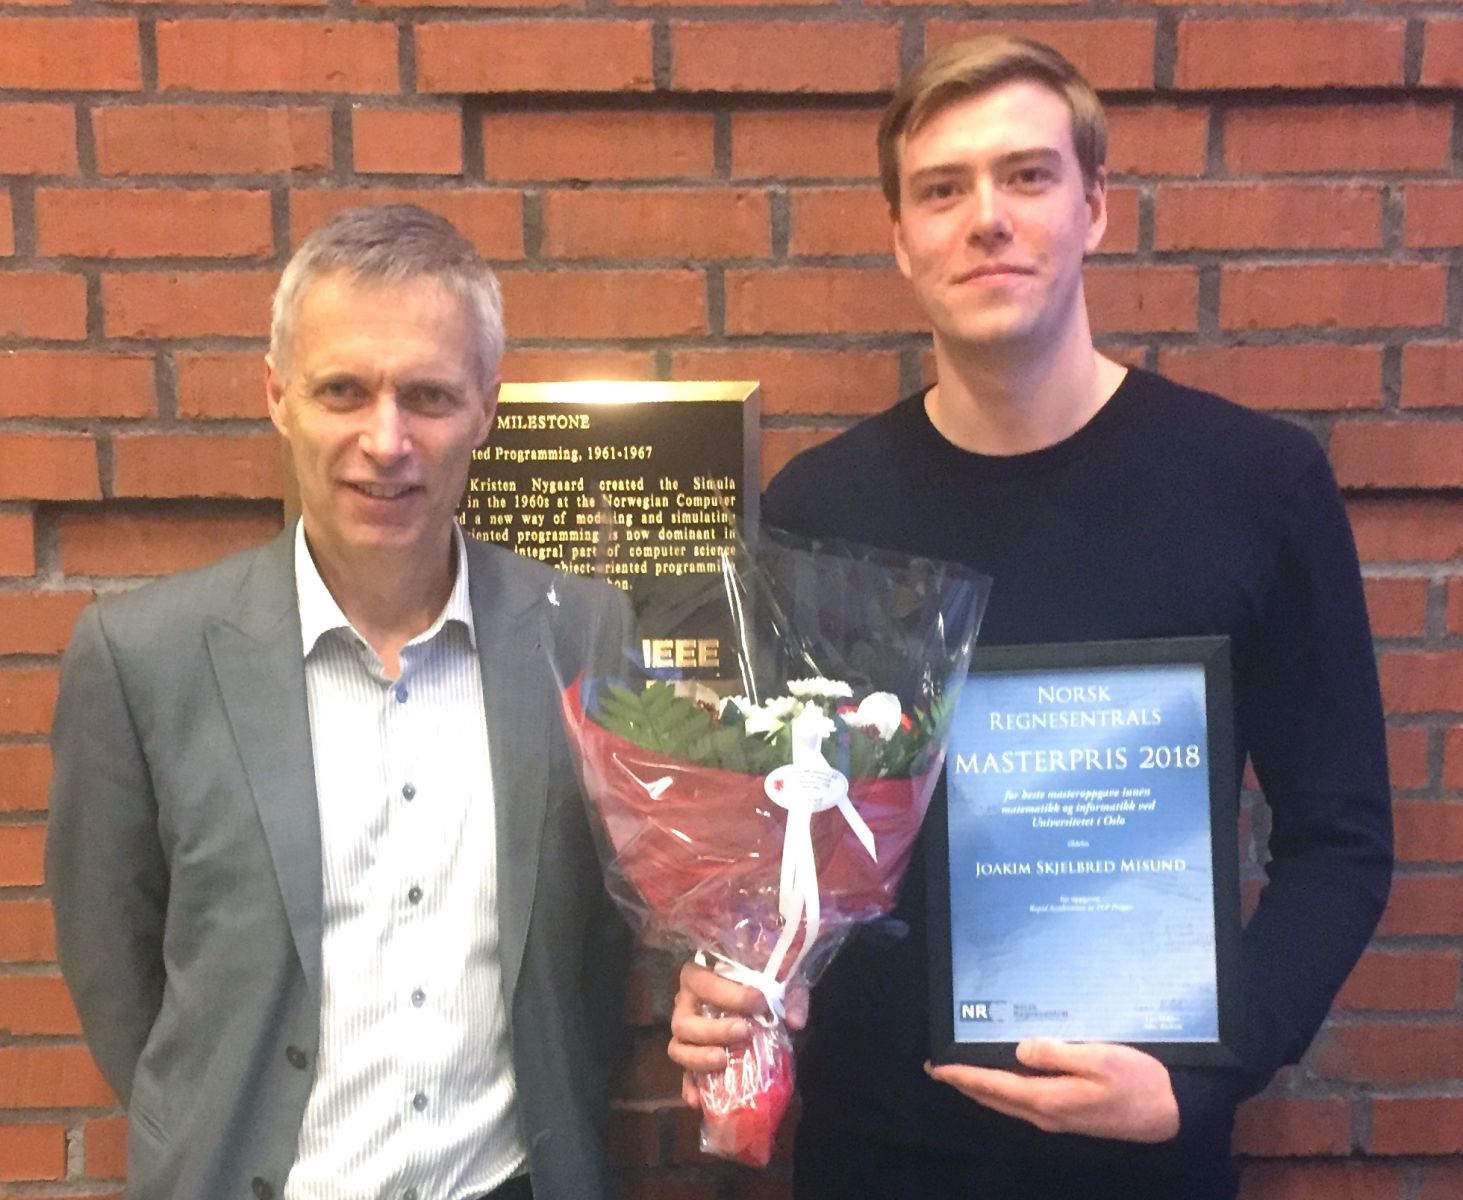 Masterprisvinner ved UiO 2018 Joakim Skjelbred Misund sammen med NRs adm. direktør Lars Holden.